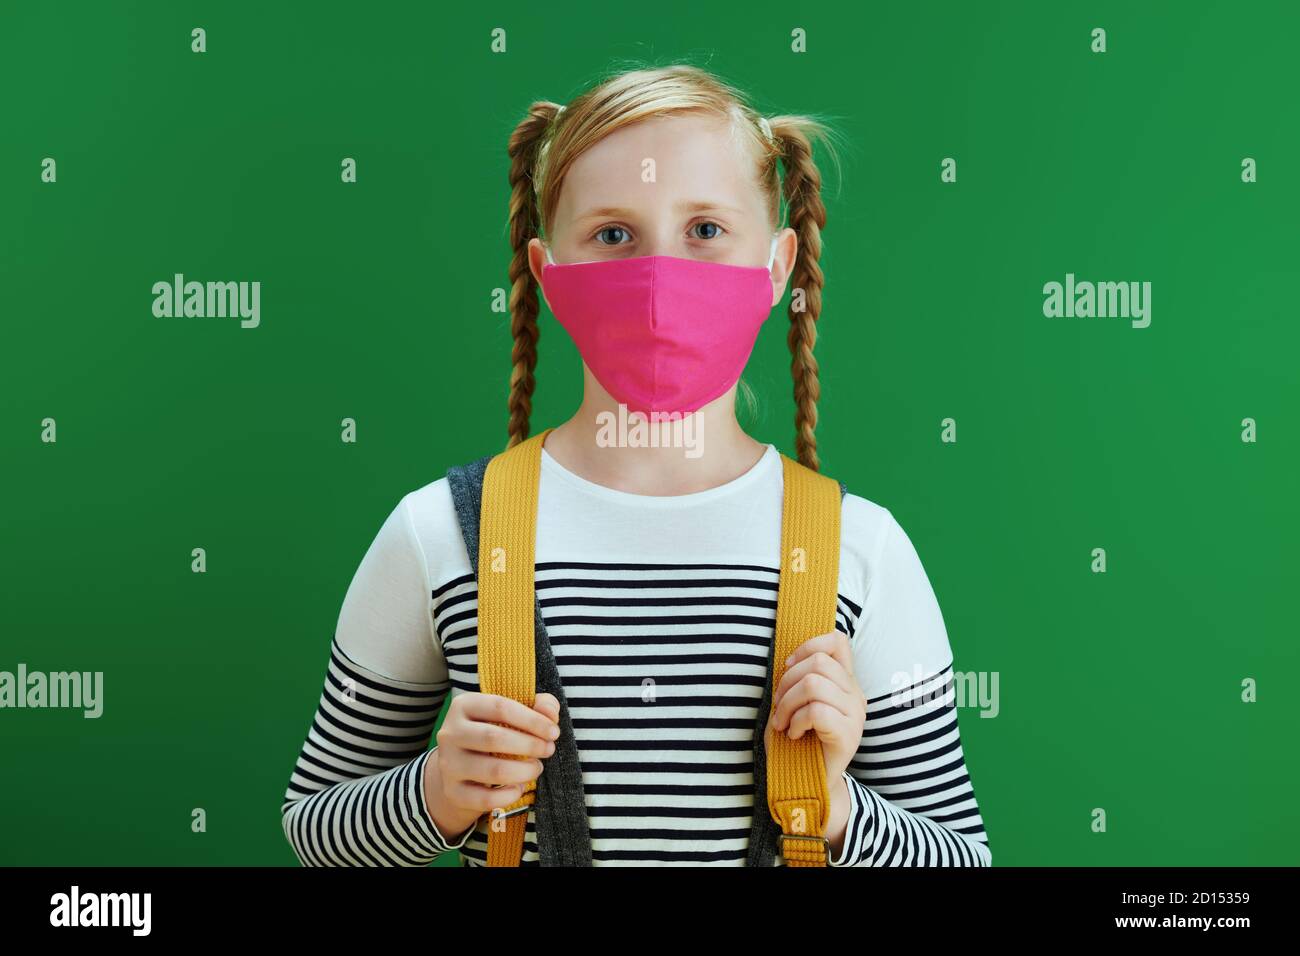 La vida durante la pandemia de covid-19. Retrato de la chica moderna de la escuela en blusa blanca con mochila amarilla y máscara rosa aisladas en el fondo verde pizarra Foto de stock